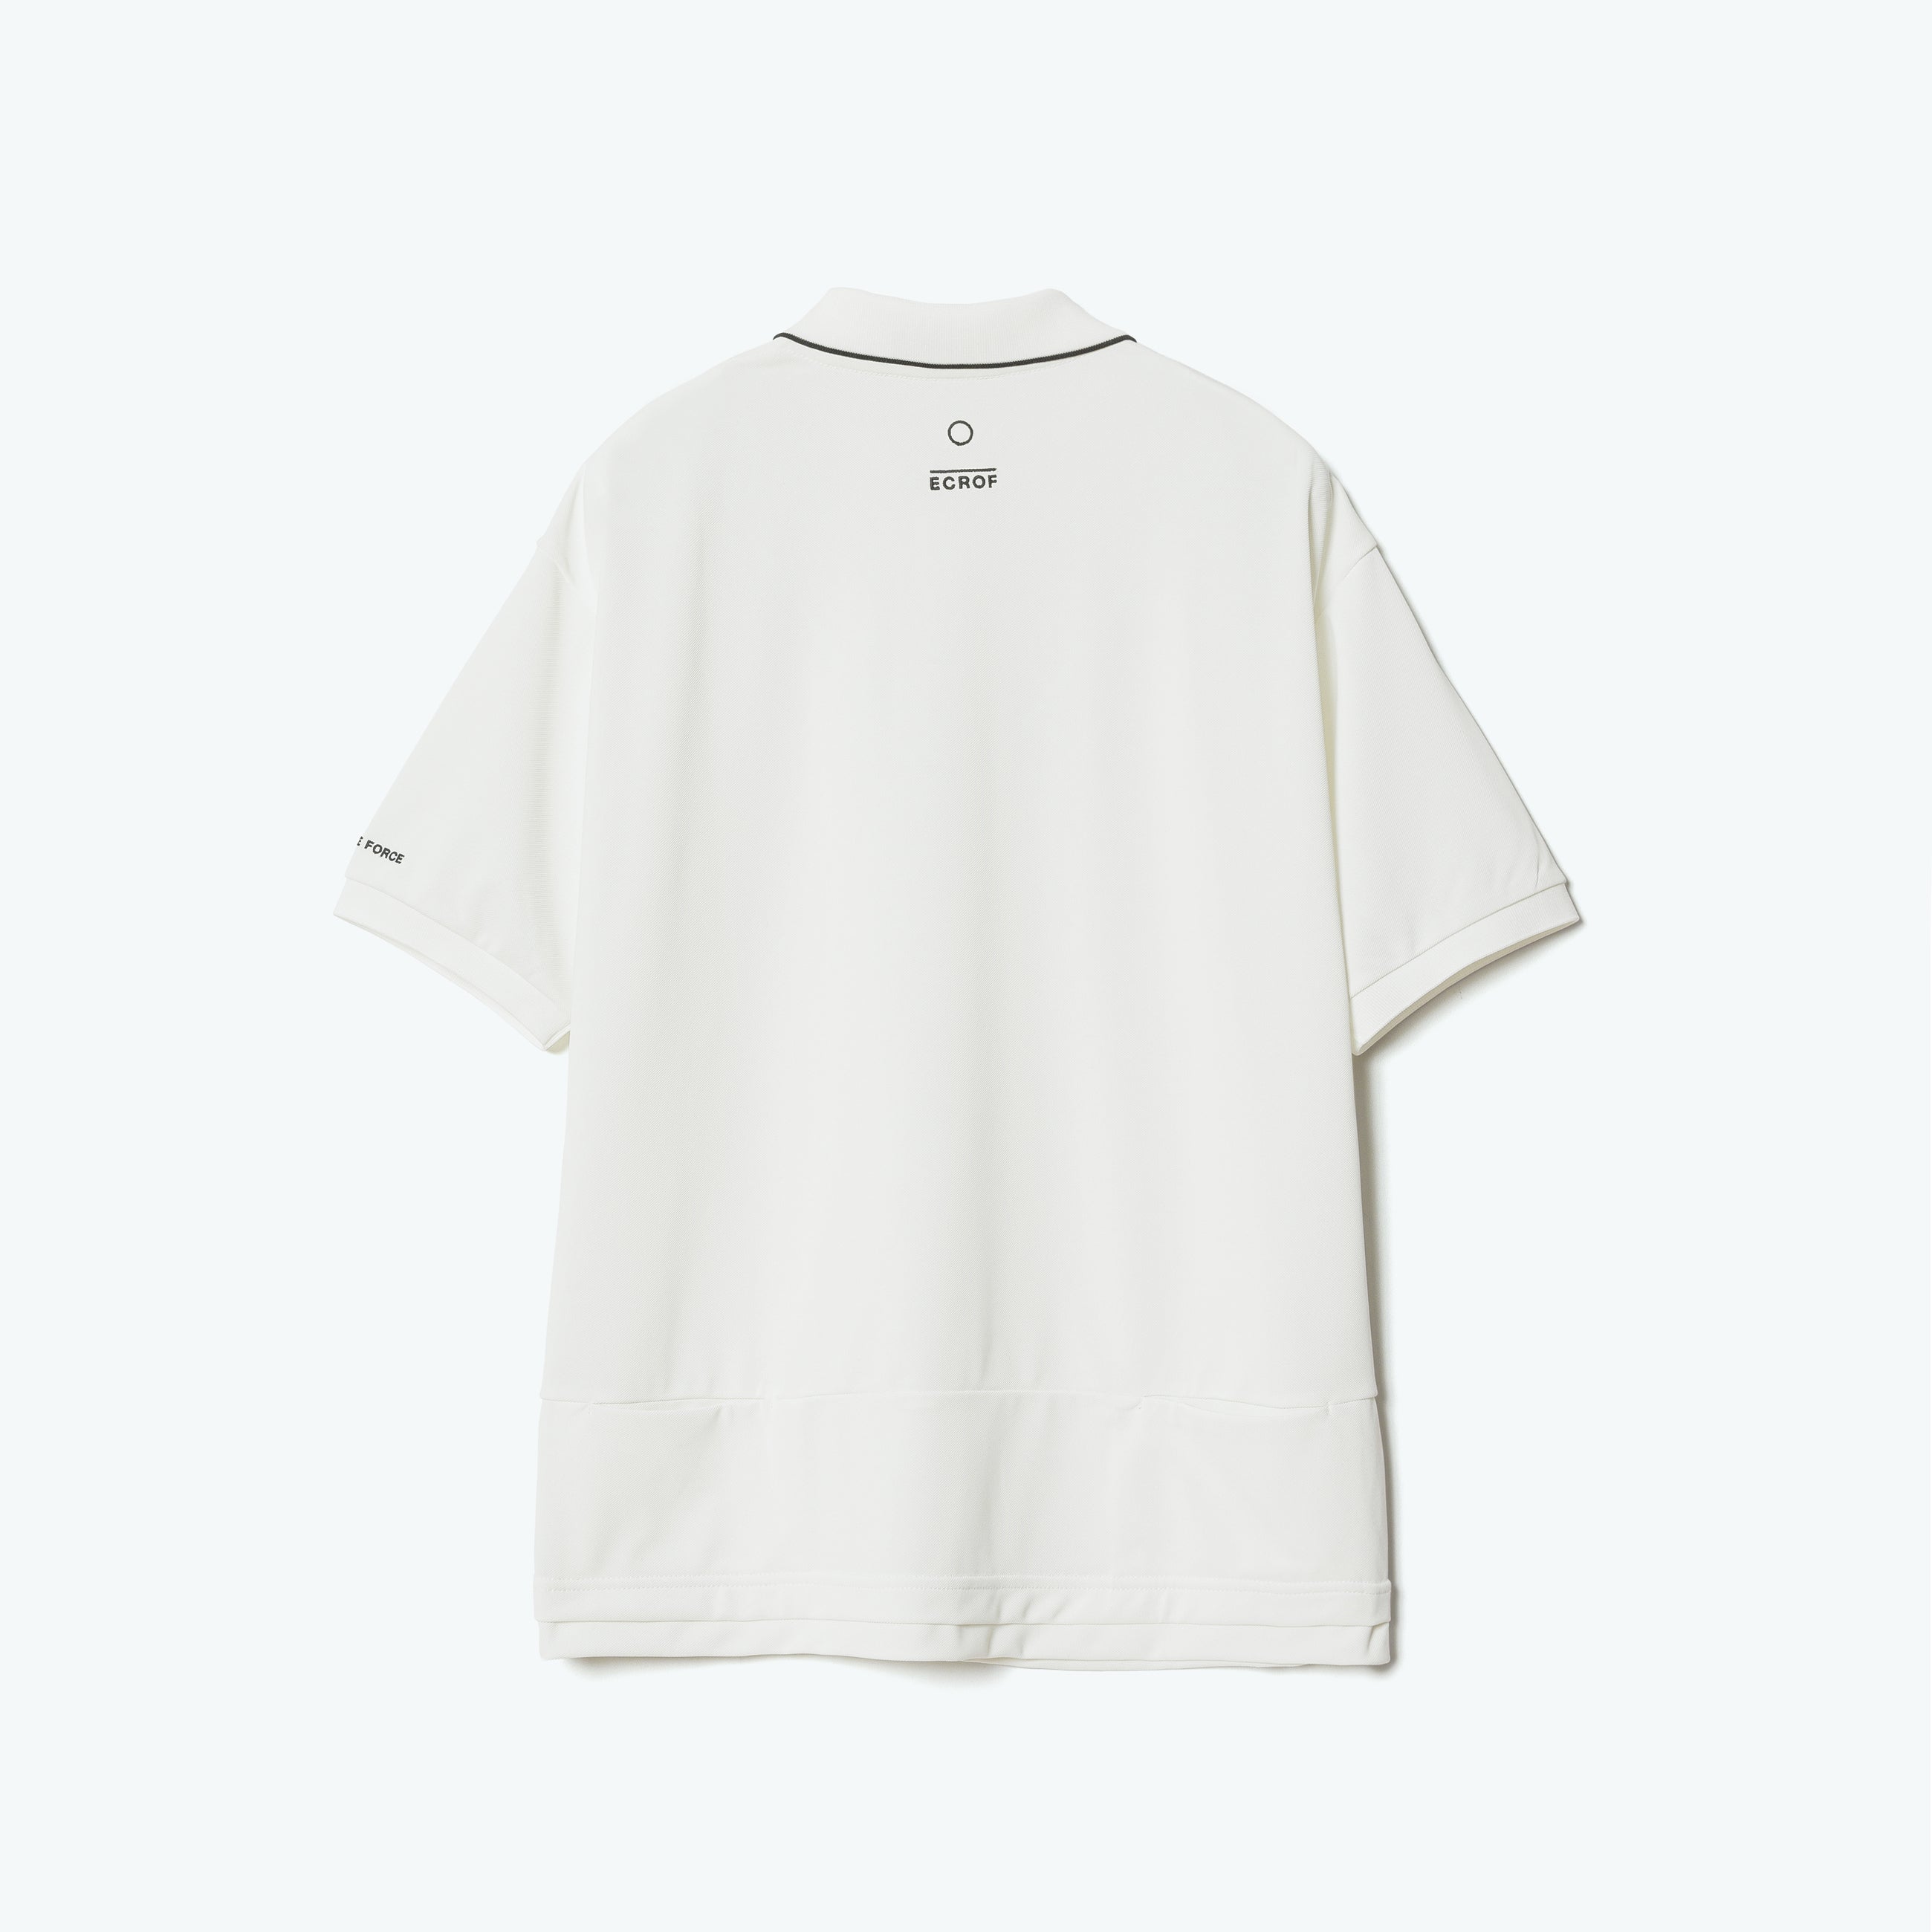 鹿の子ポロ / Kanoko Polo shirt